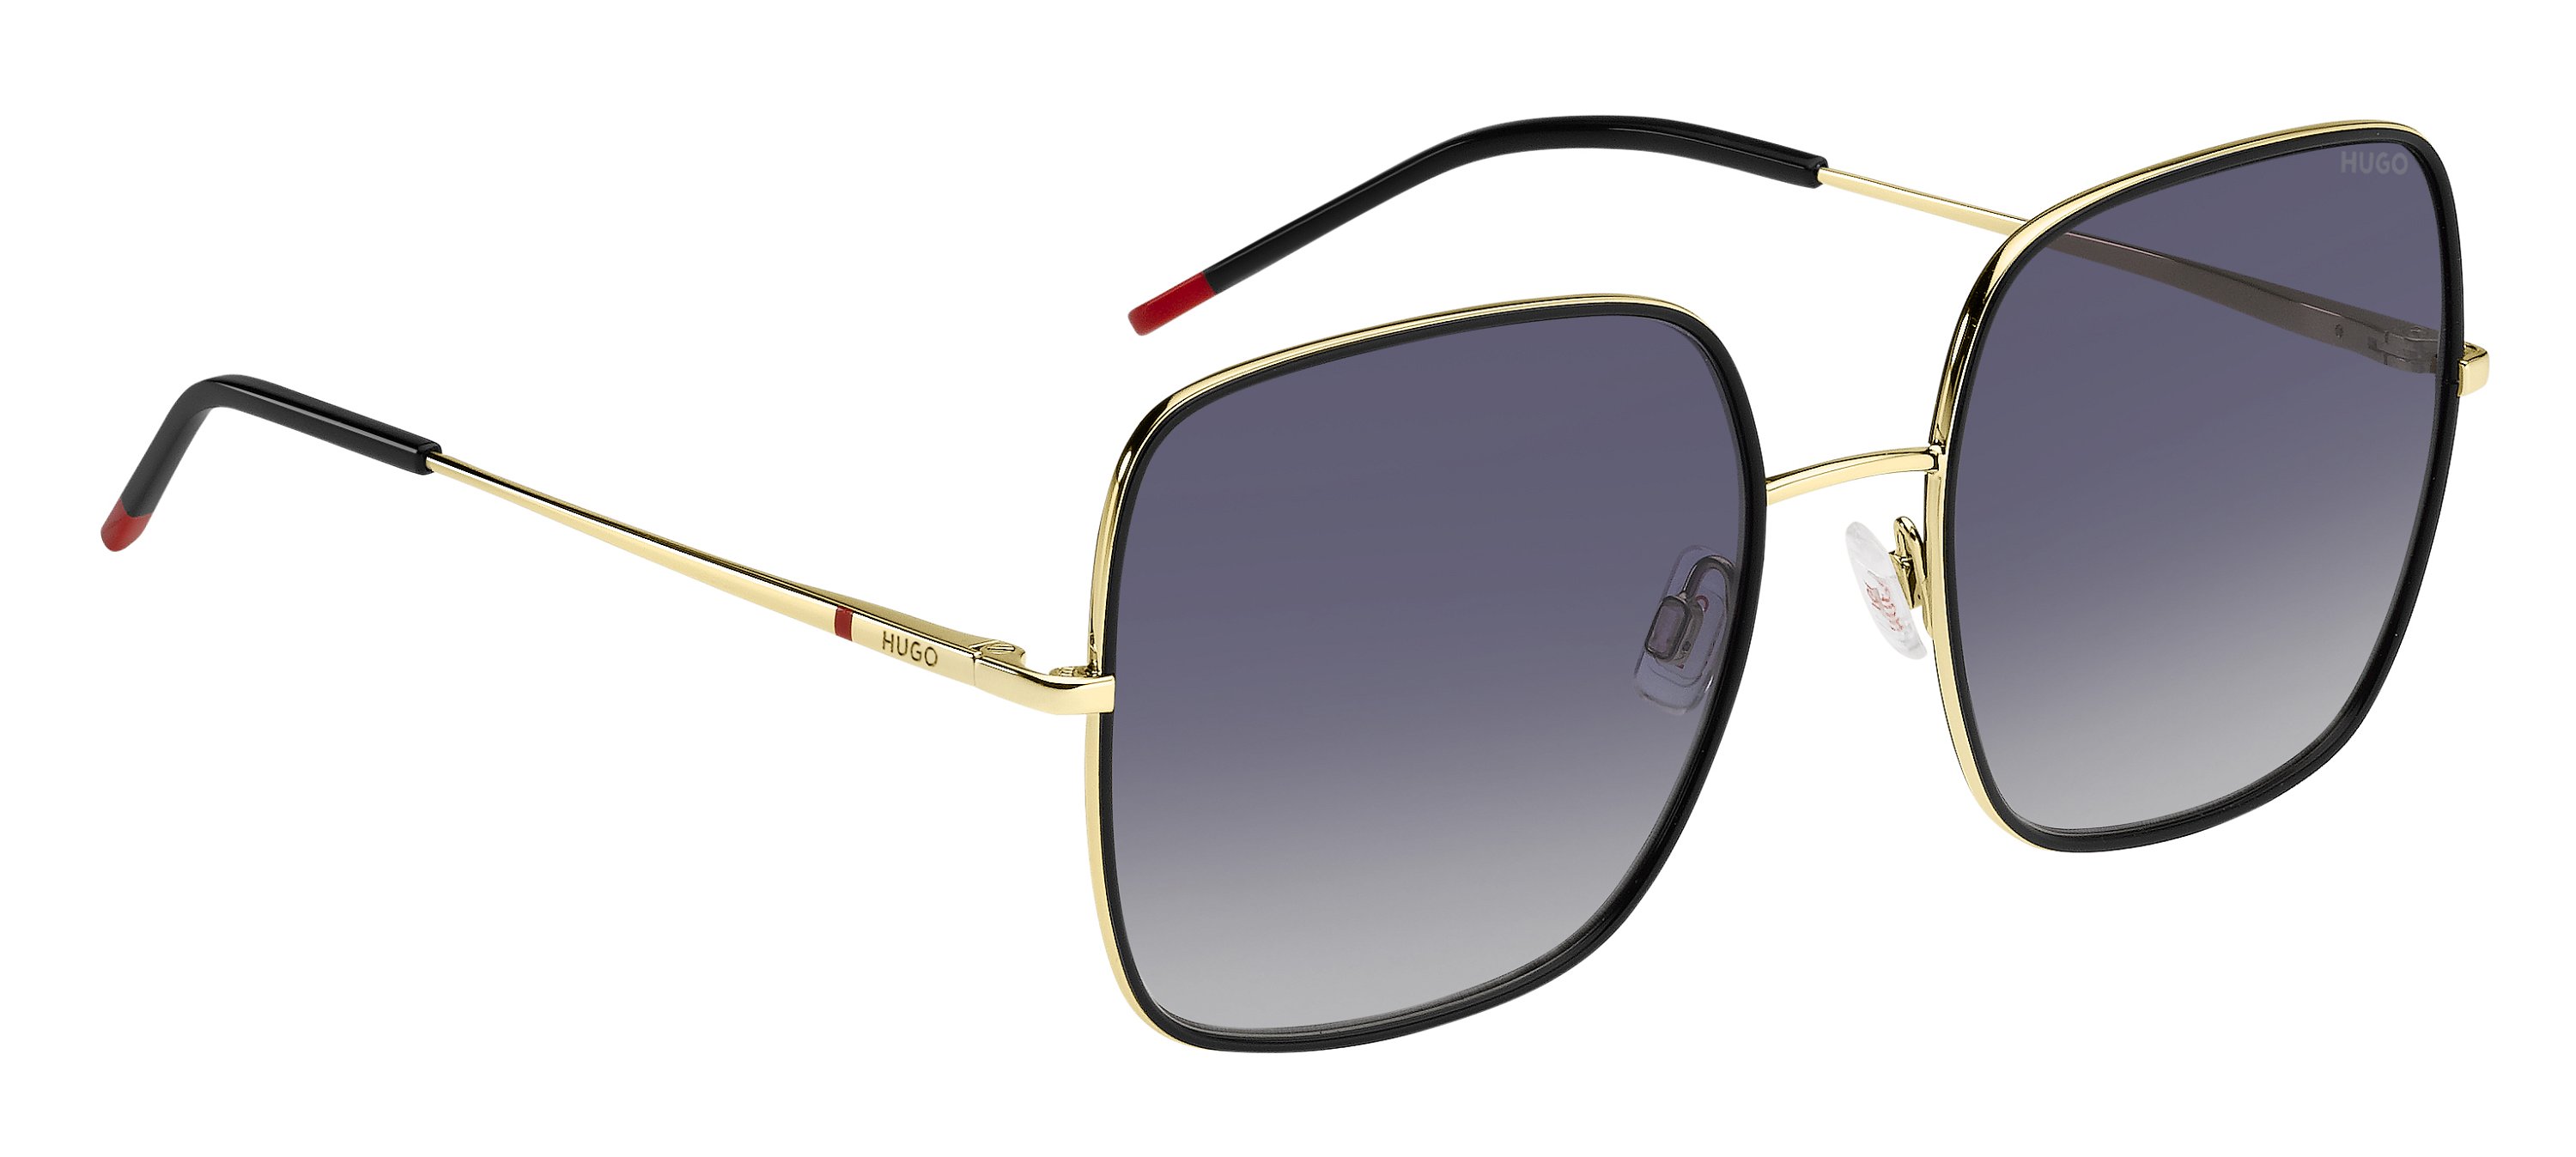 Das Bild zeigt die Sonnenbrille HG1293/S RHL von der Marke Hugo in gold/schwarz.